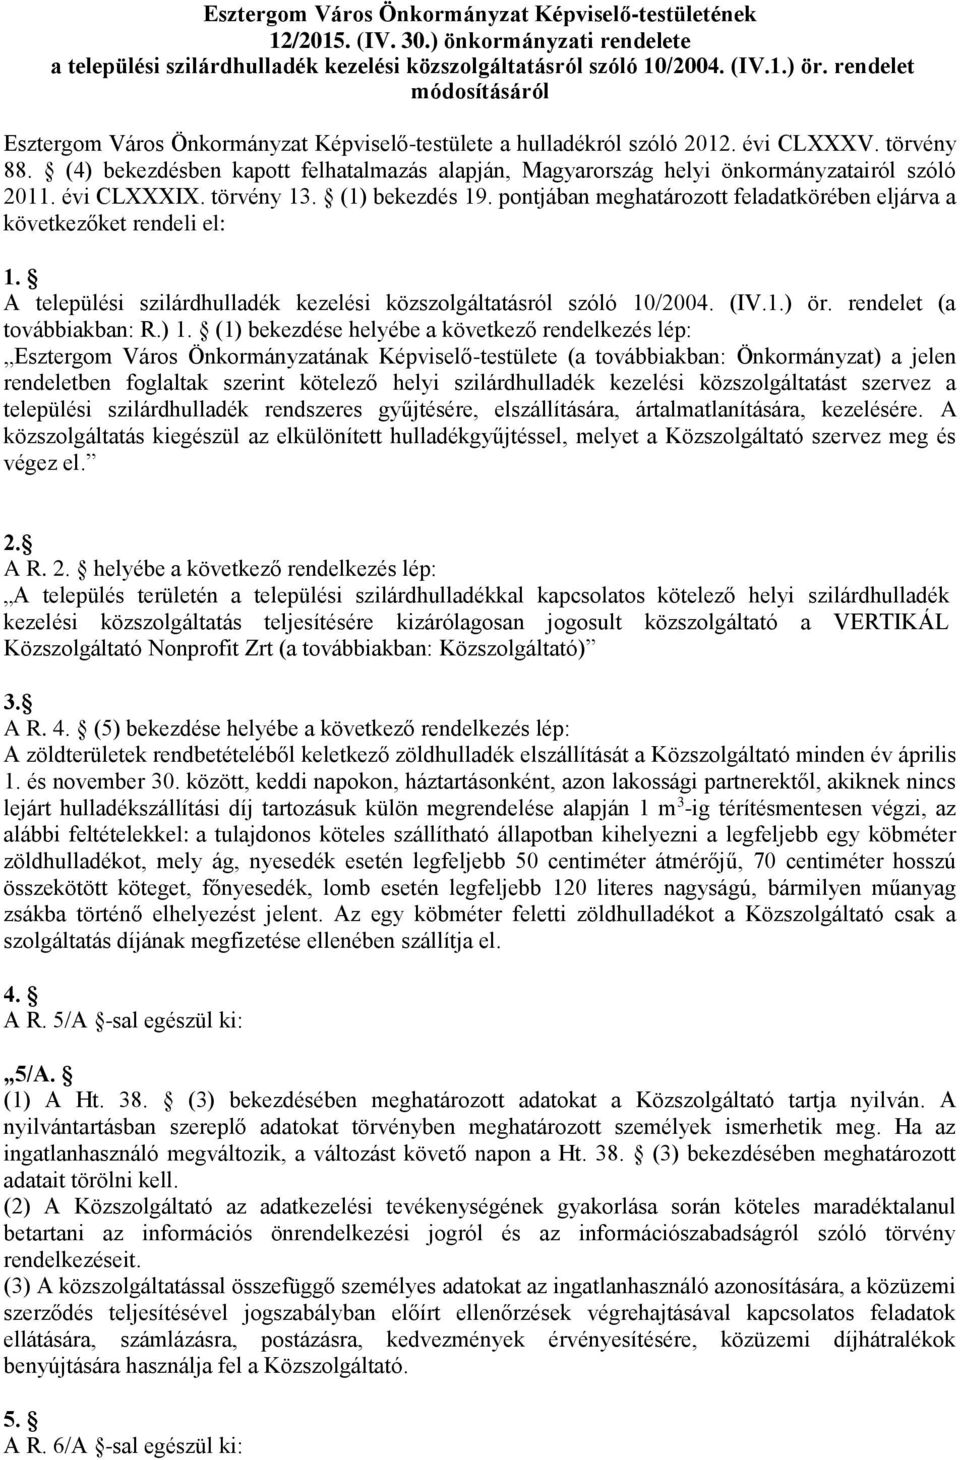 (4) bekezdésben kapott felhatalmazás alapján, Magyarország helyi önkormányzatairól szóló 2011. évi CLXXXIX. törvény 13. (1) bekezdés 19.